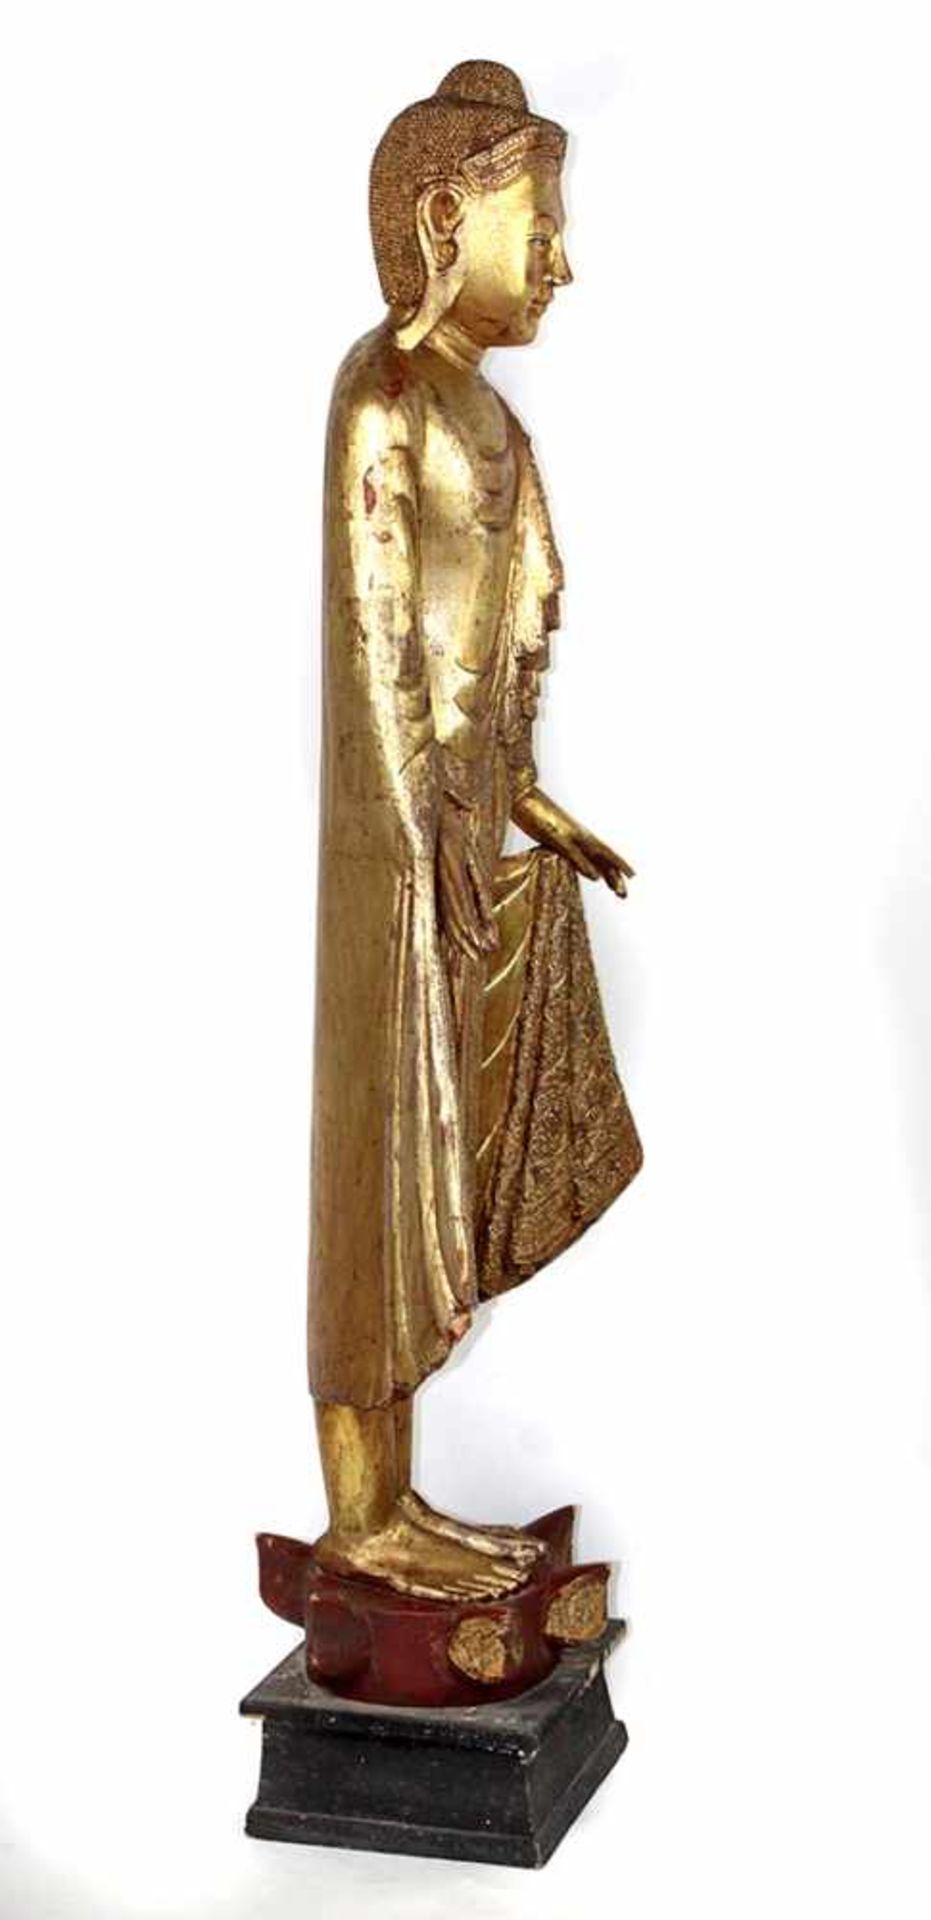 stehender BuddhaHolz vergoldet, Kayotsarga Asana, Strinbandkrönung mit versiegelten Applikationen, - Bild 3 aus 4